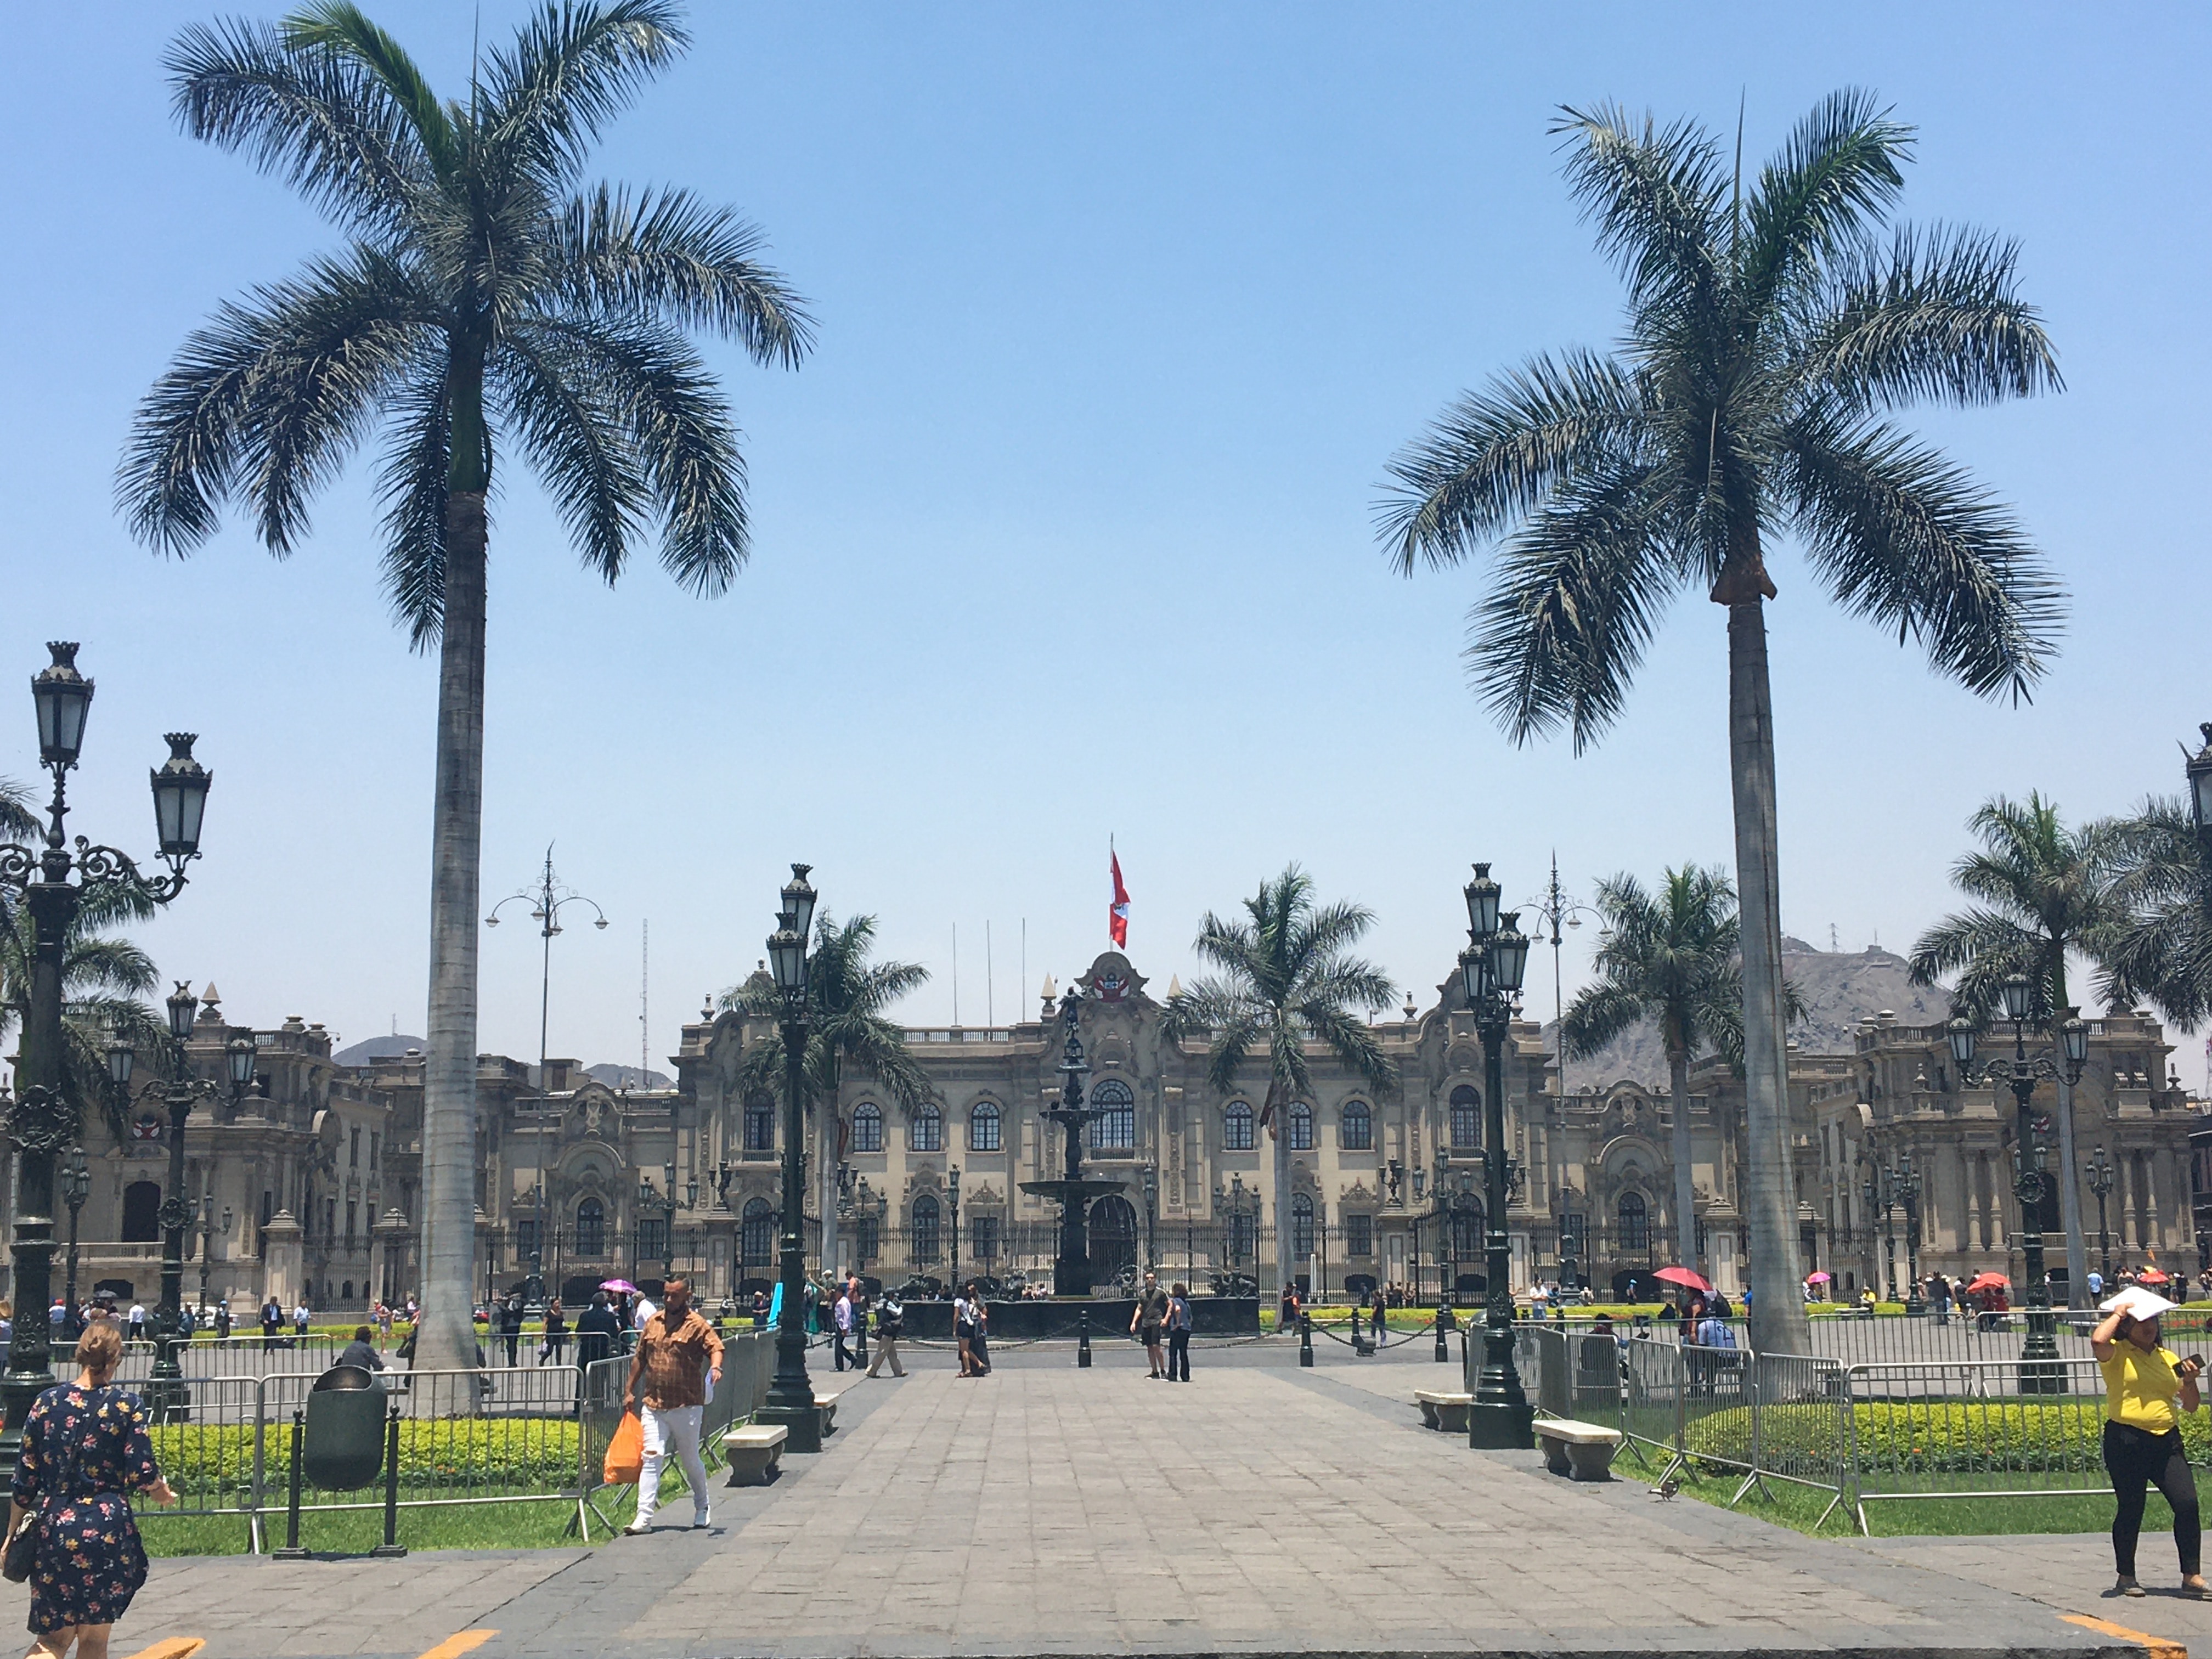 Palacio de Gobierno del Peru, Lima, Peru, Photo by Jhordy Rojas on Unsplash